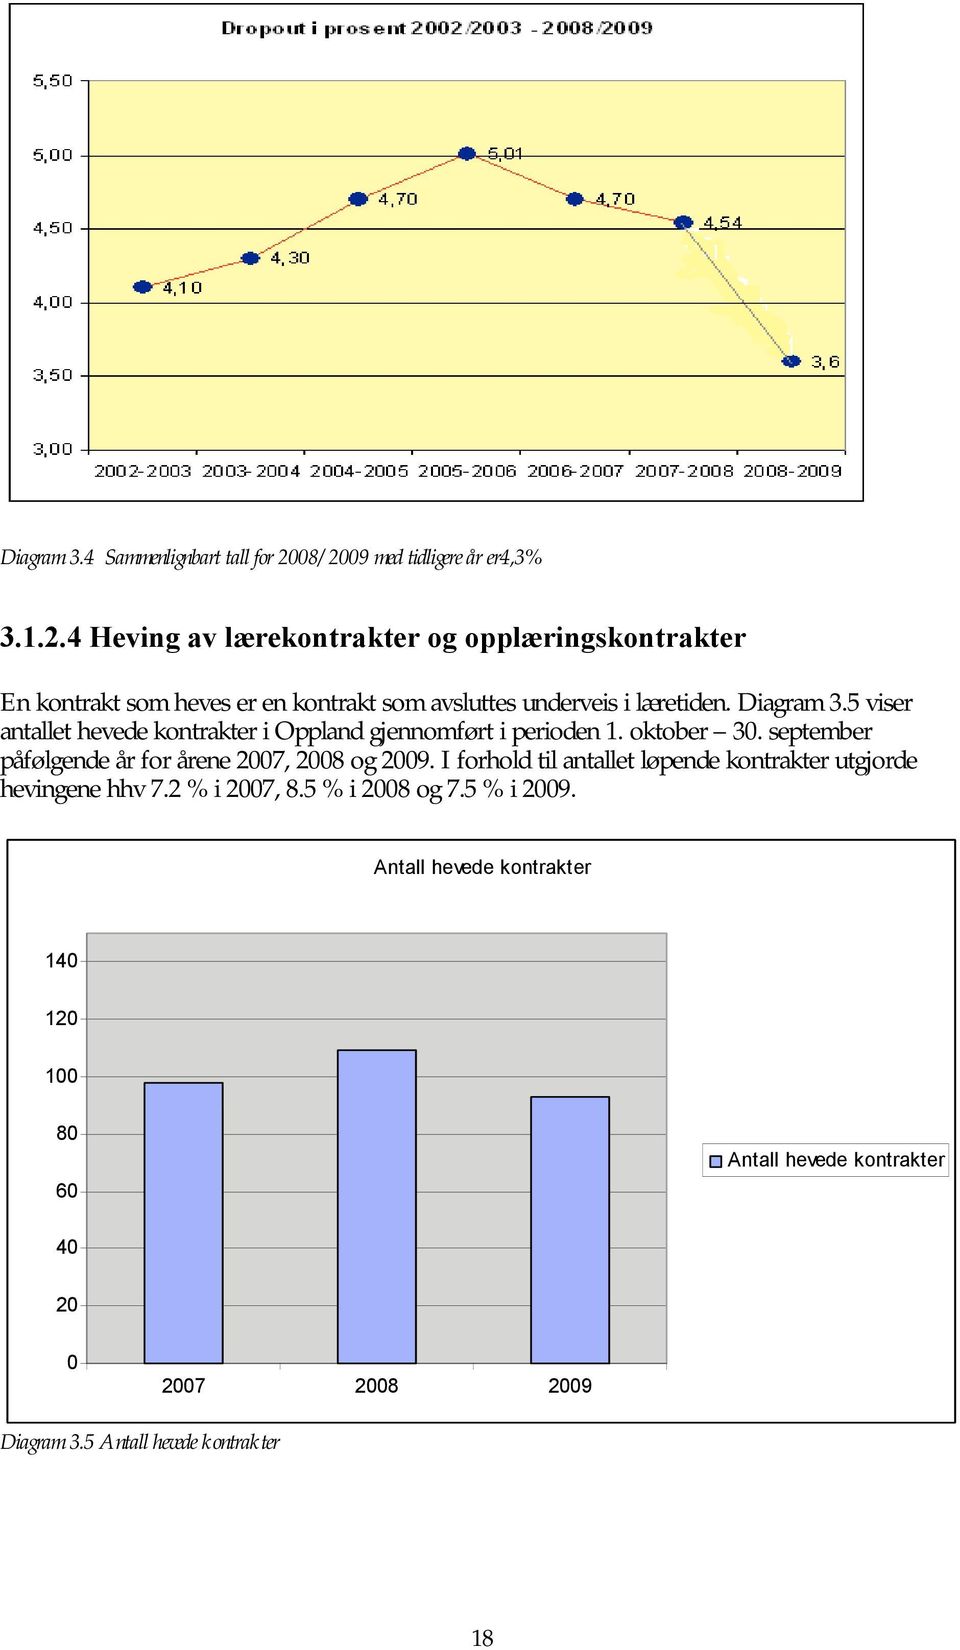 Diagram 3.5 viser antallet hevede kontrakter i Oppland gjennomført i perioden 1. oktober 30. september påfølgende år for årene 2007, 2008 og 2009.